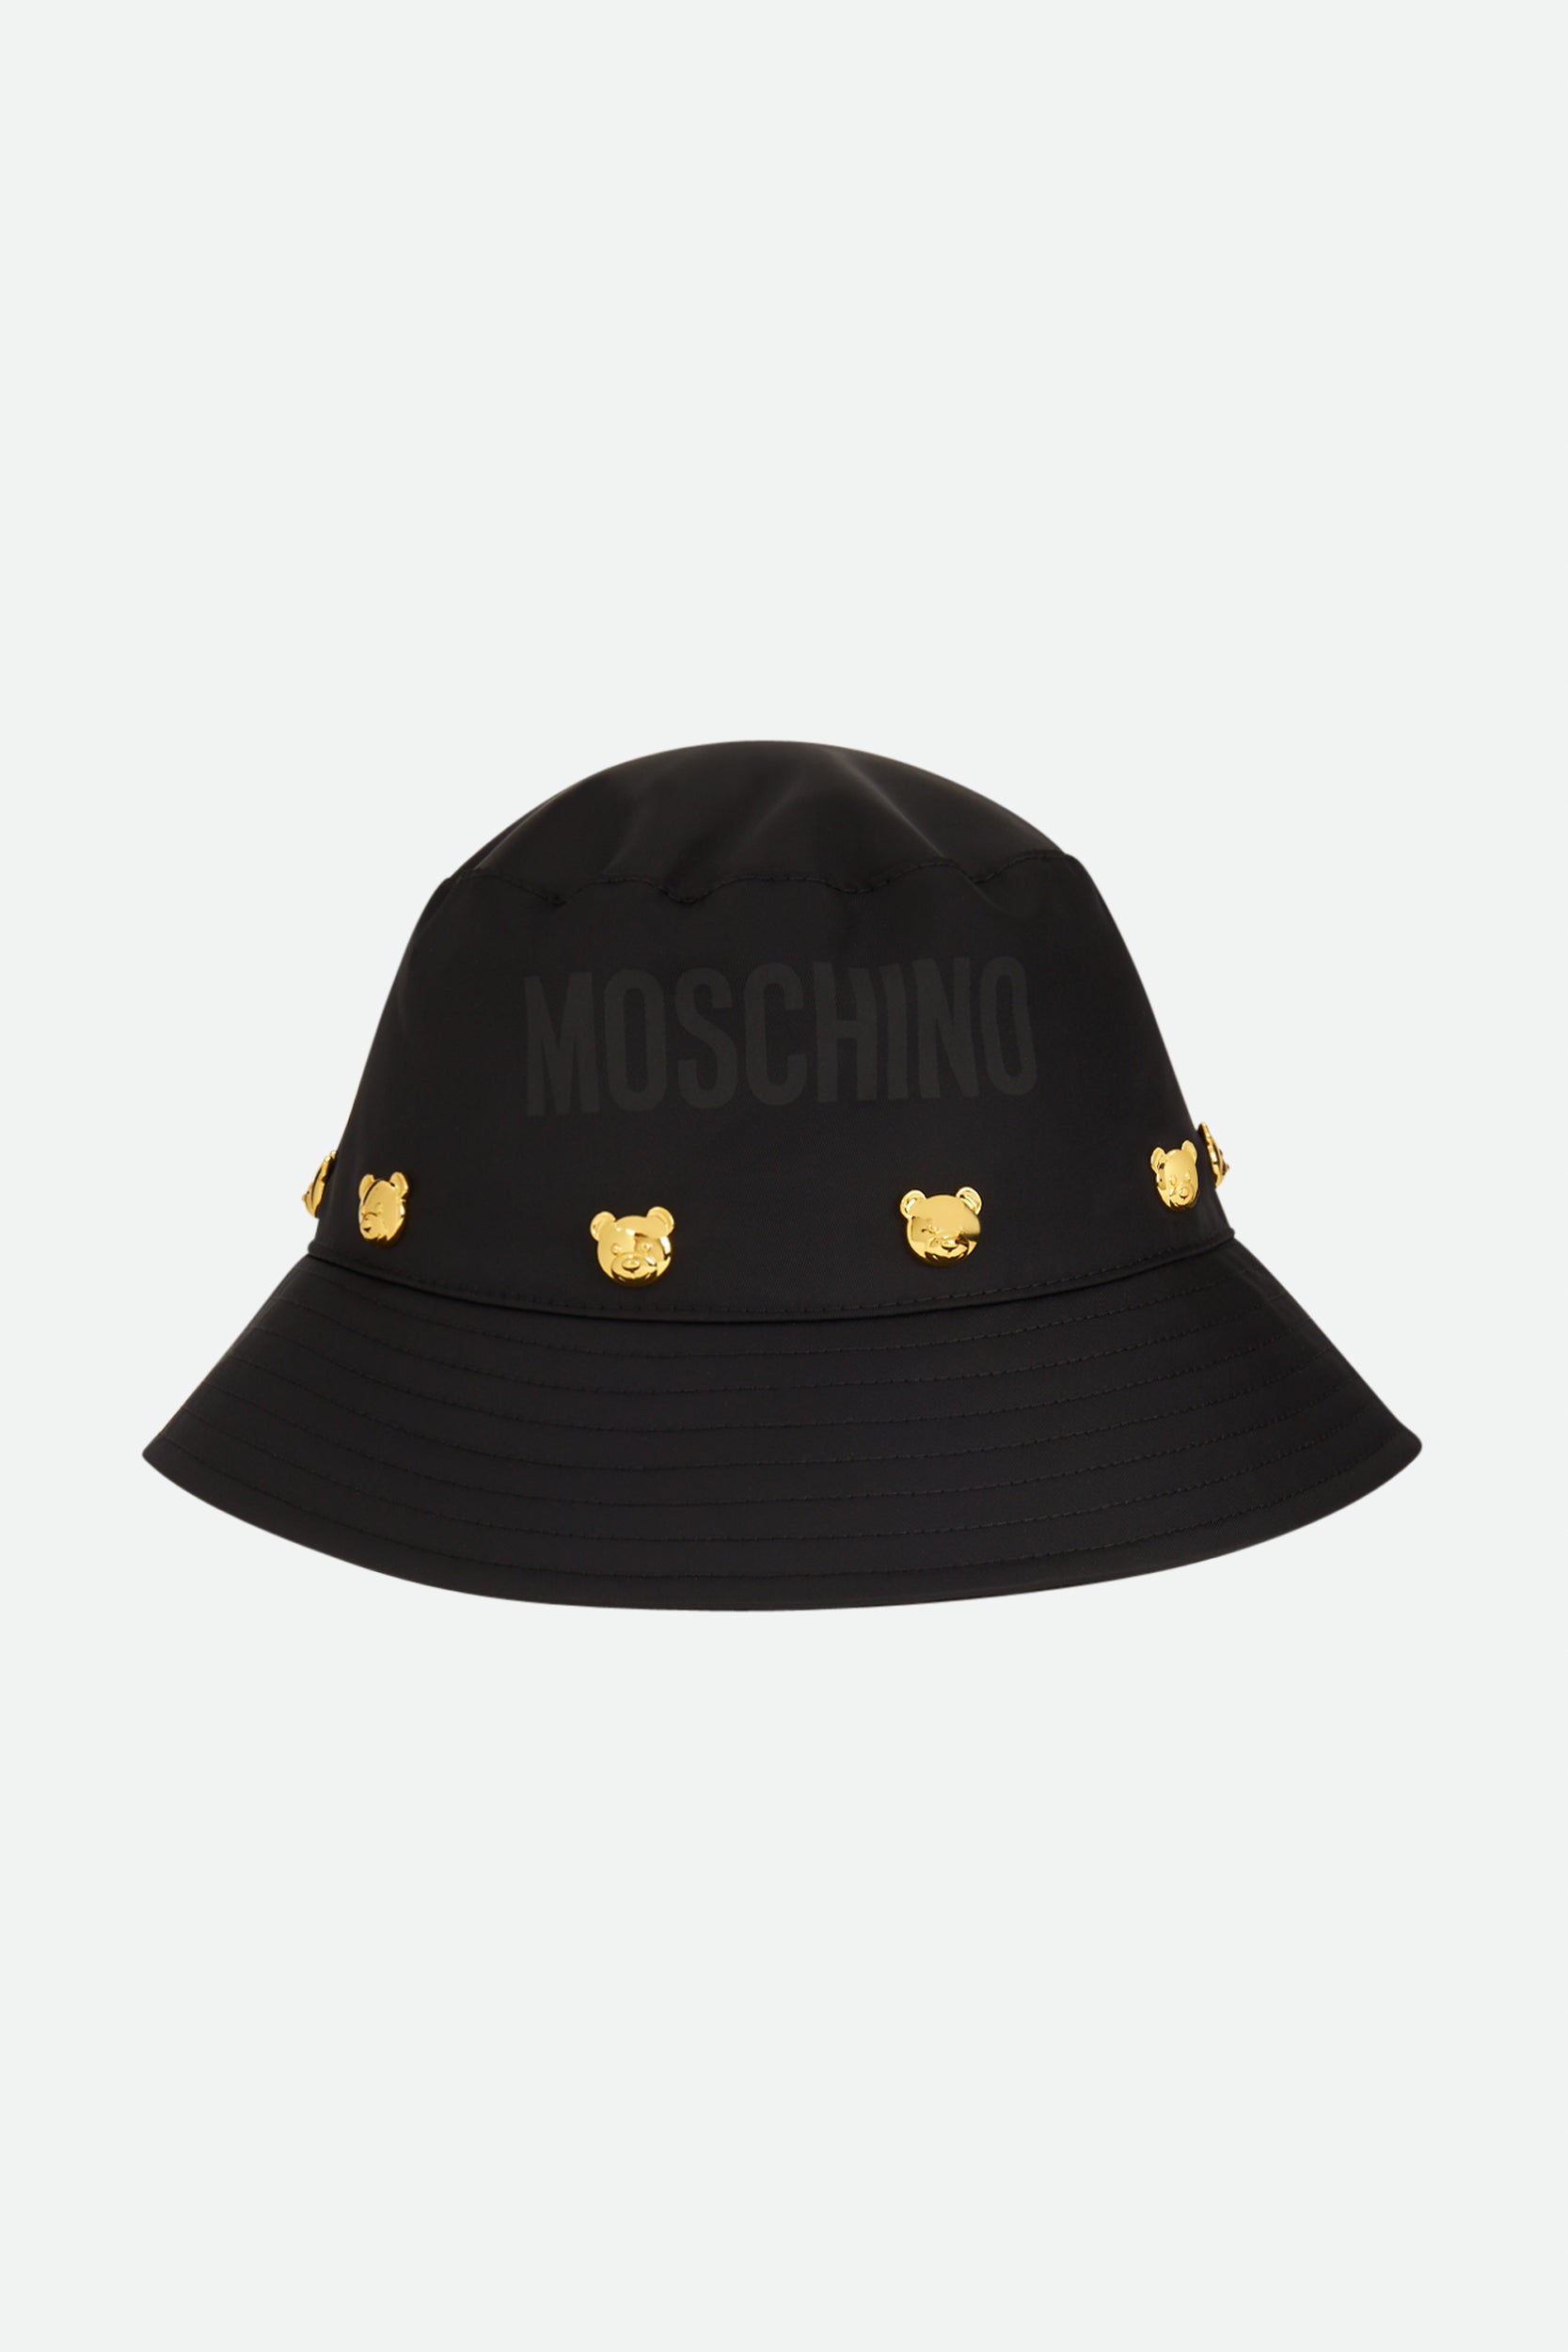 Moschino Black Fisherman Hat